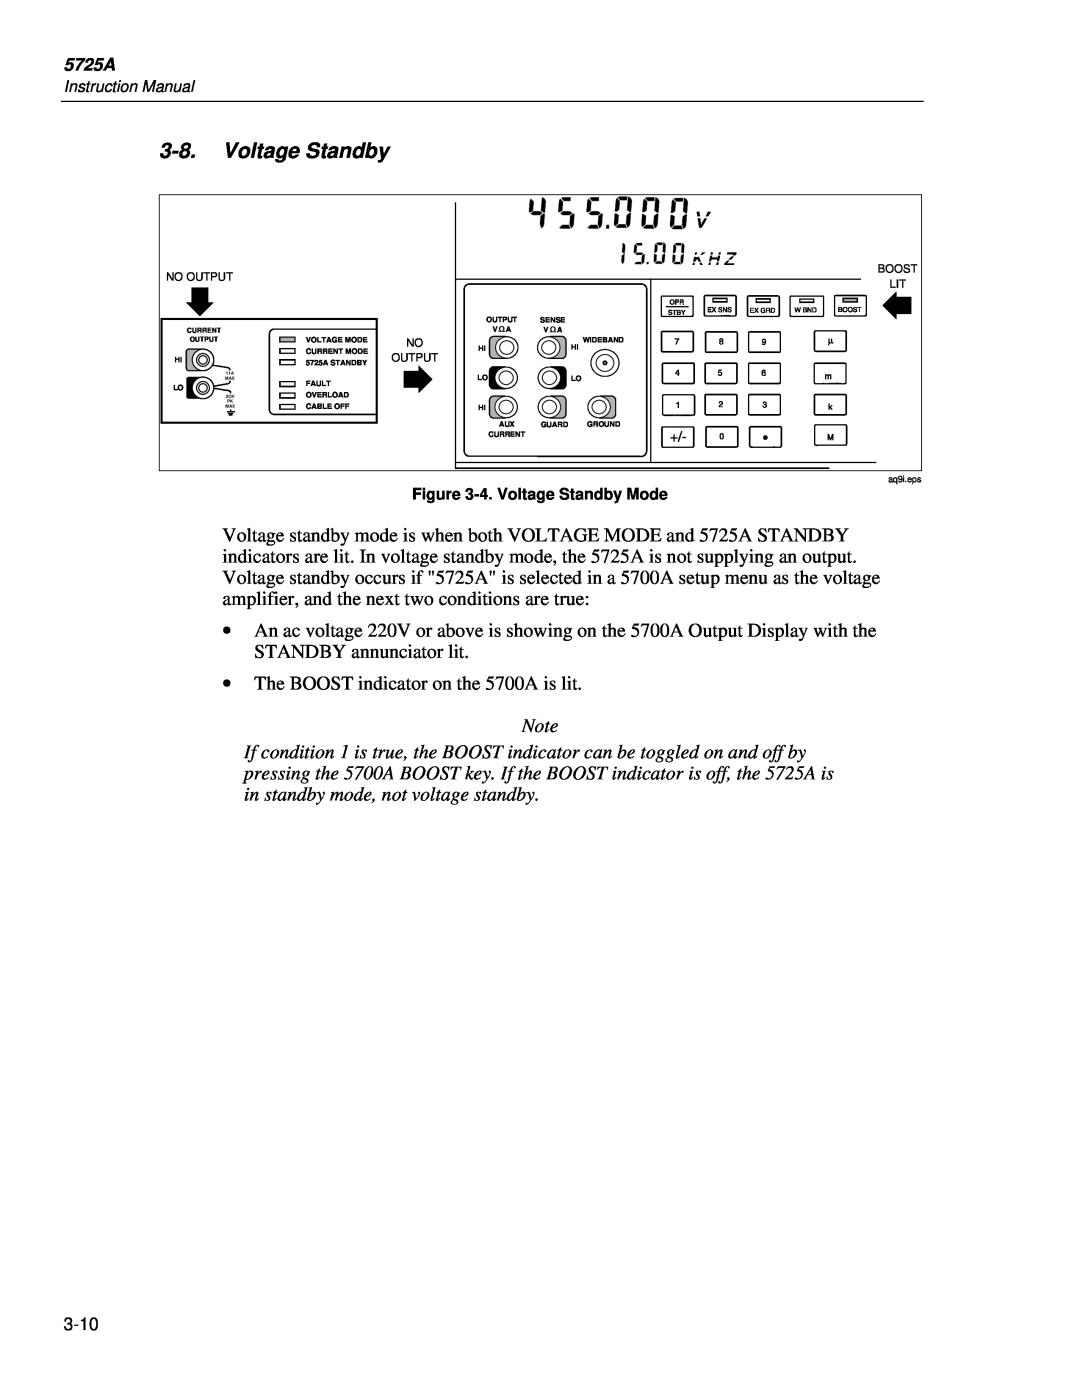 Fluke 5725A instruction manual Voltage Standby 